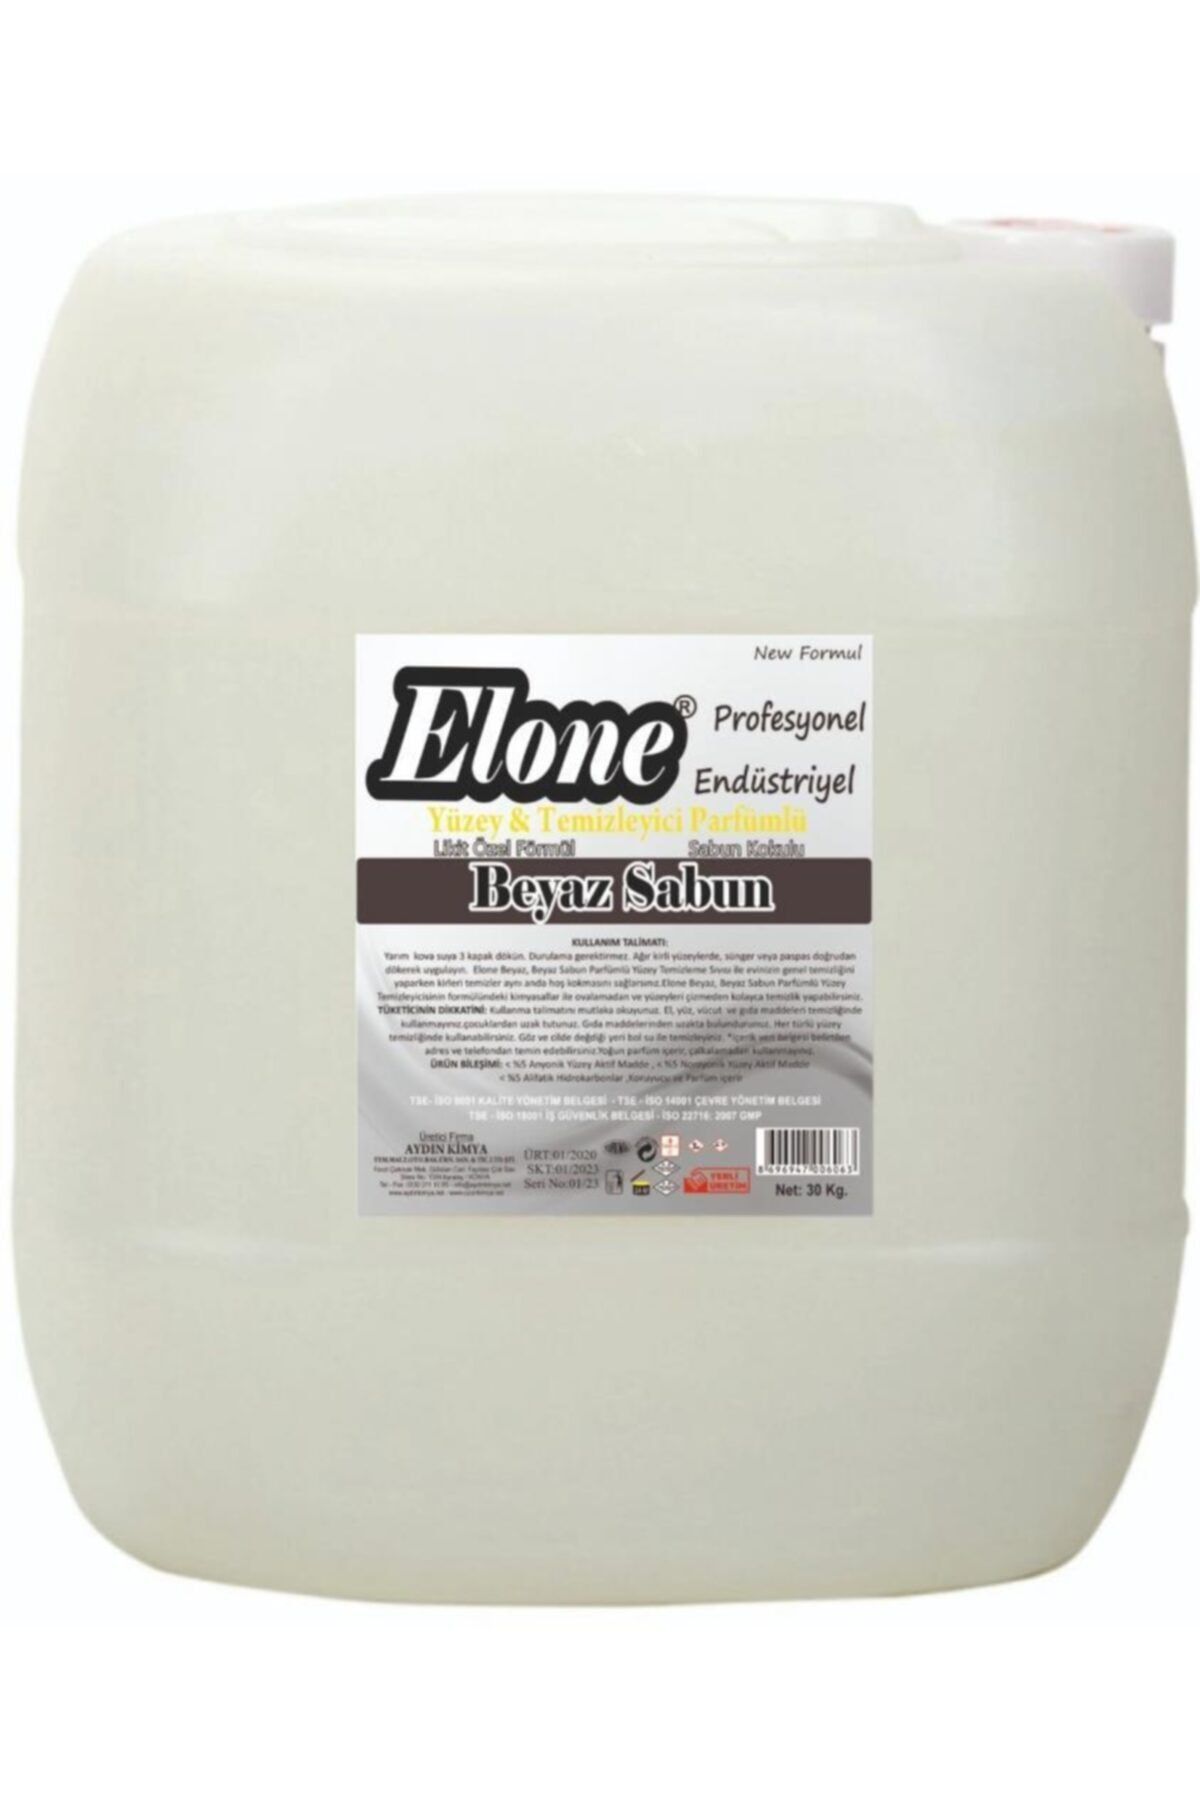 easyso Beyaz Sabun Parfümlü Yüzey Temizleyici 30 Lt Kokulu Sıvı Sabun Katkılı Ev Ve Profesyonel Temizlik Ho